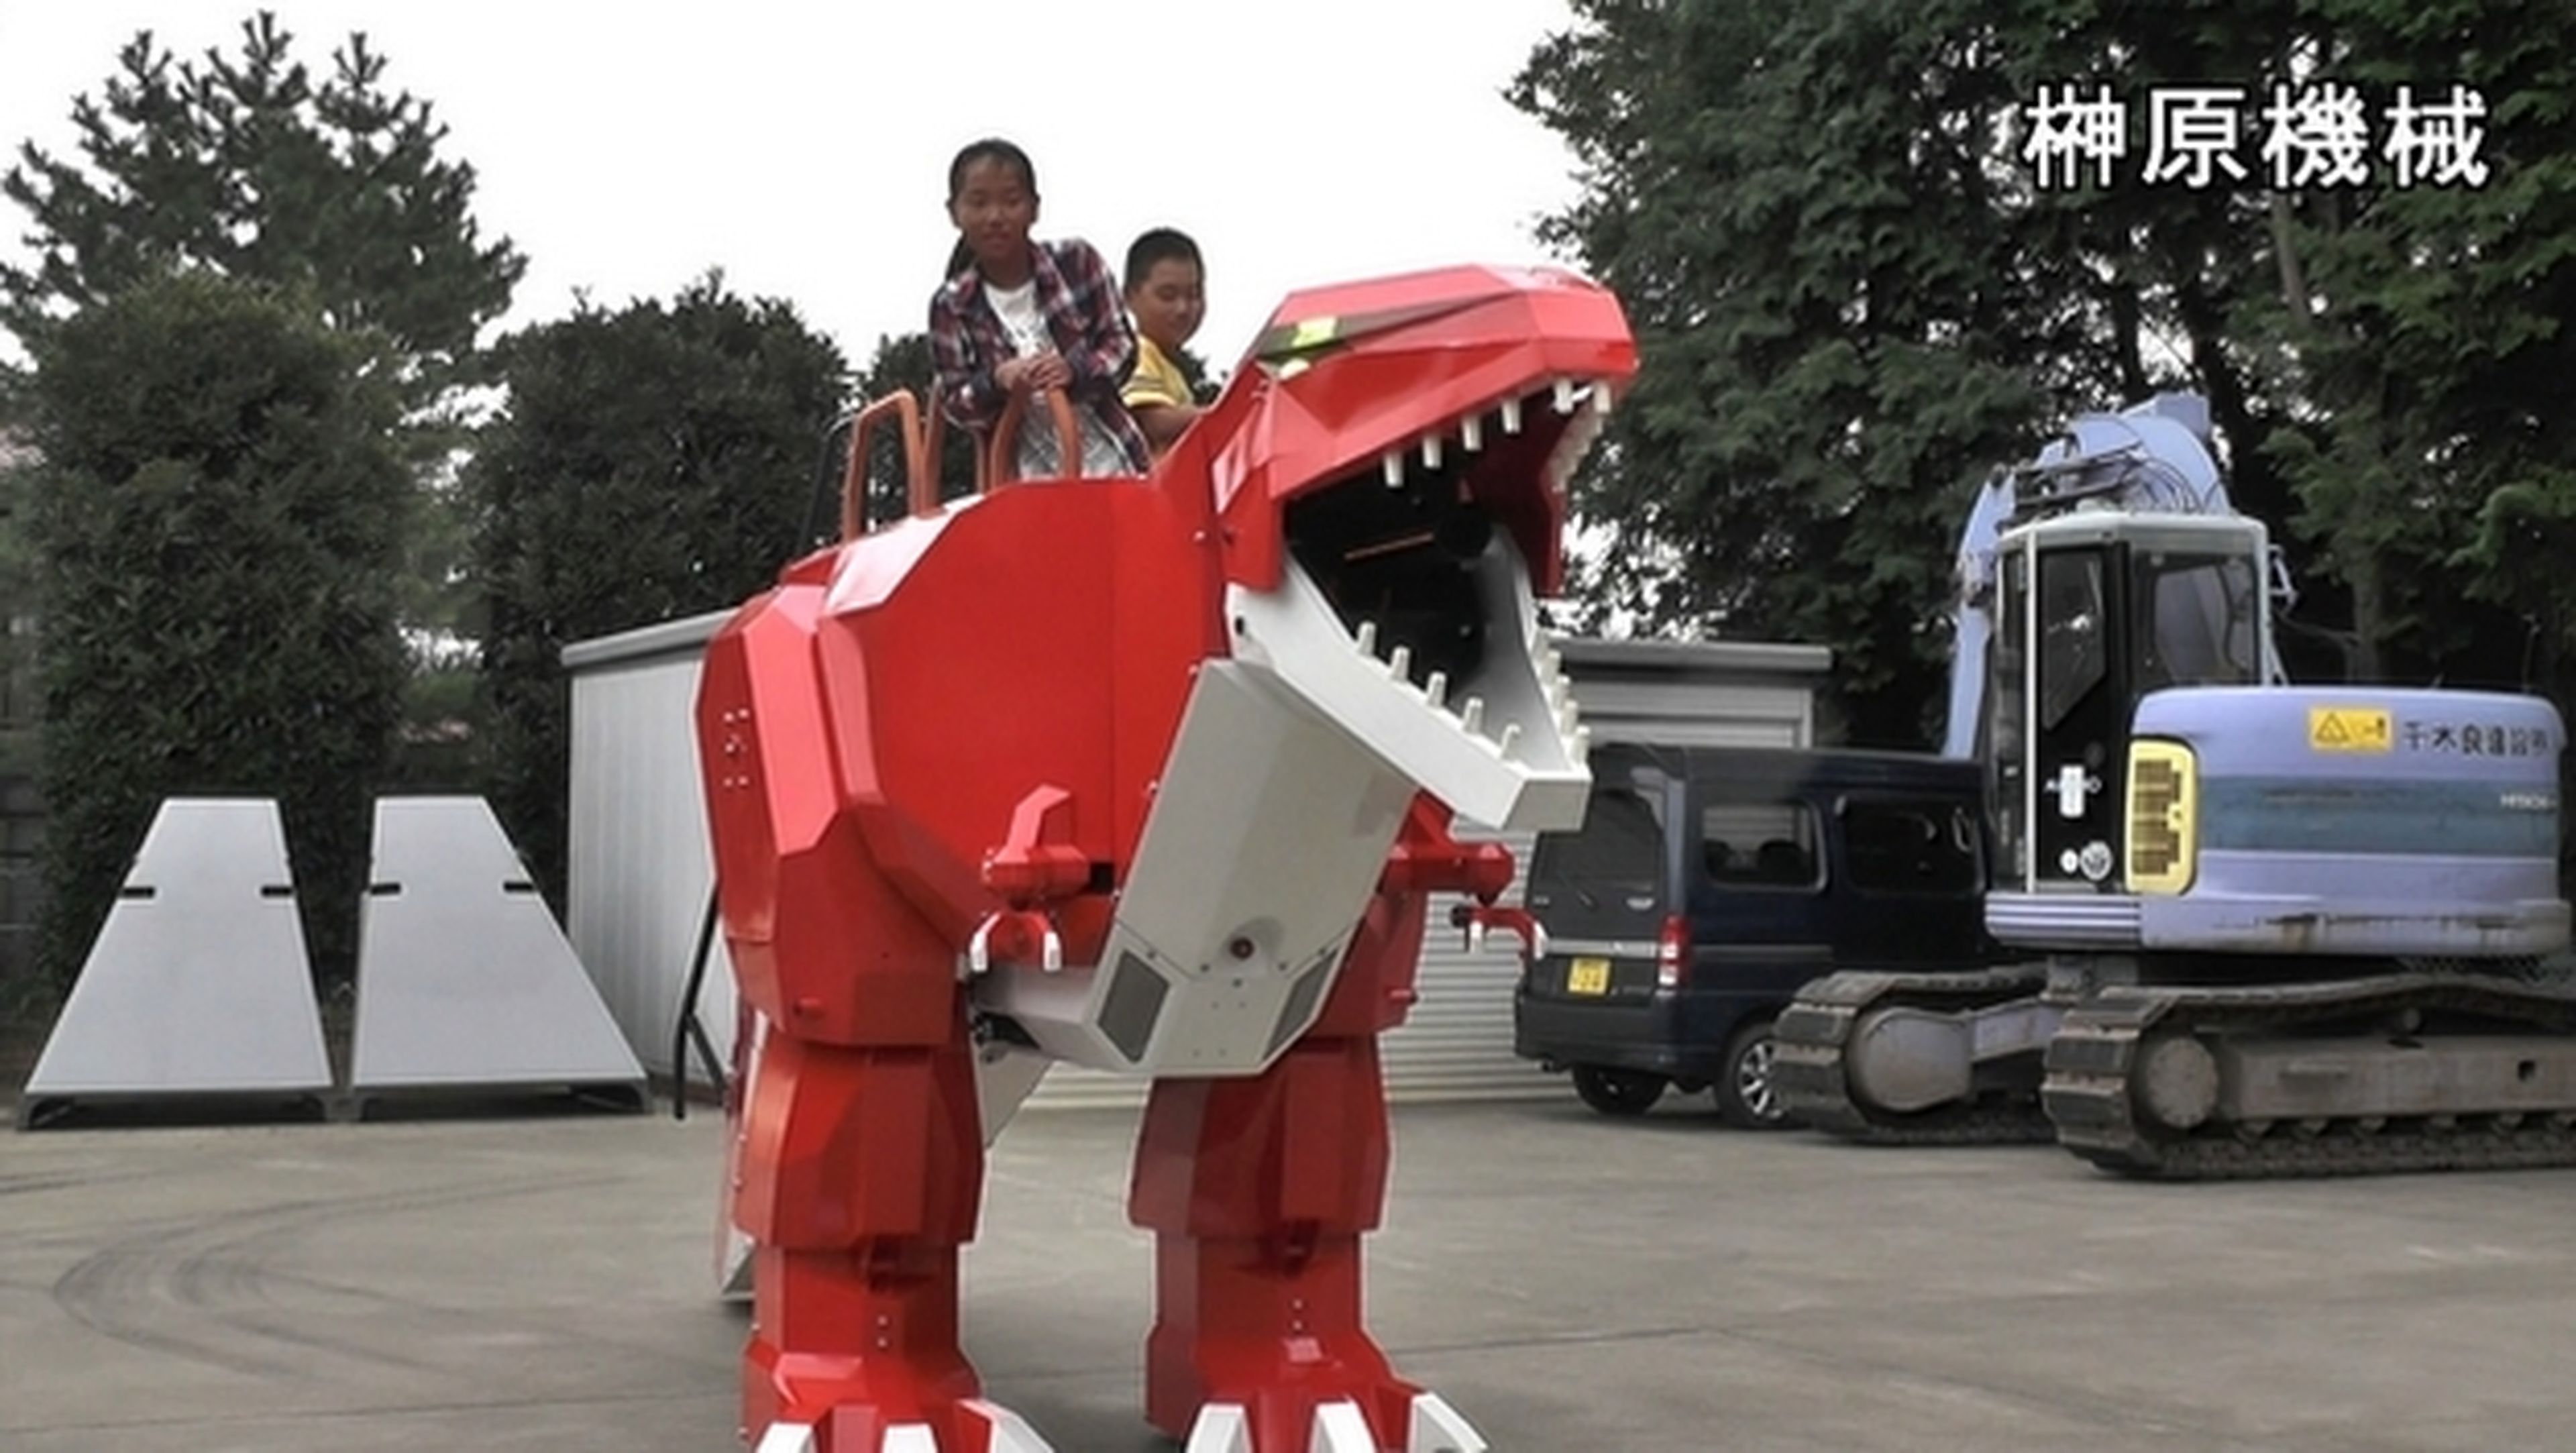 Robots gigantes pilotados por niños, así se divierten en Japón